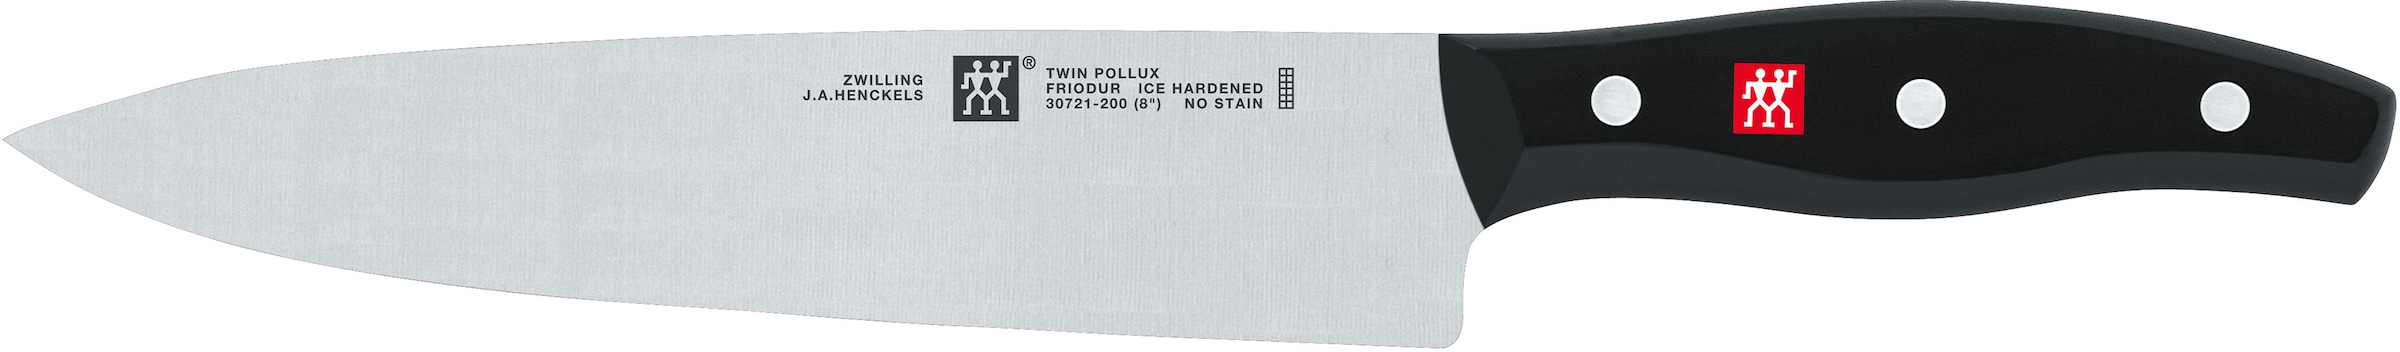 Zwilling Topf-Set »Focus/Twin Pollux«, 3-teiligem Edelstahl, inkl. Jahren 6 Induktion, mit 3 Edelstahl, beschichtet, (Set, tlg.), Garantie Kochmesser-Set XXL